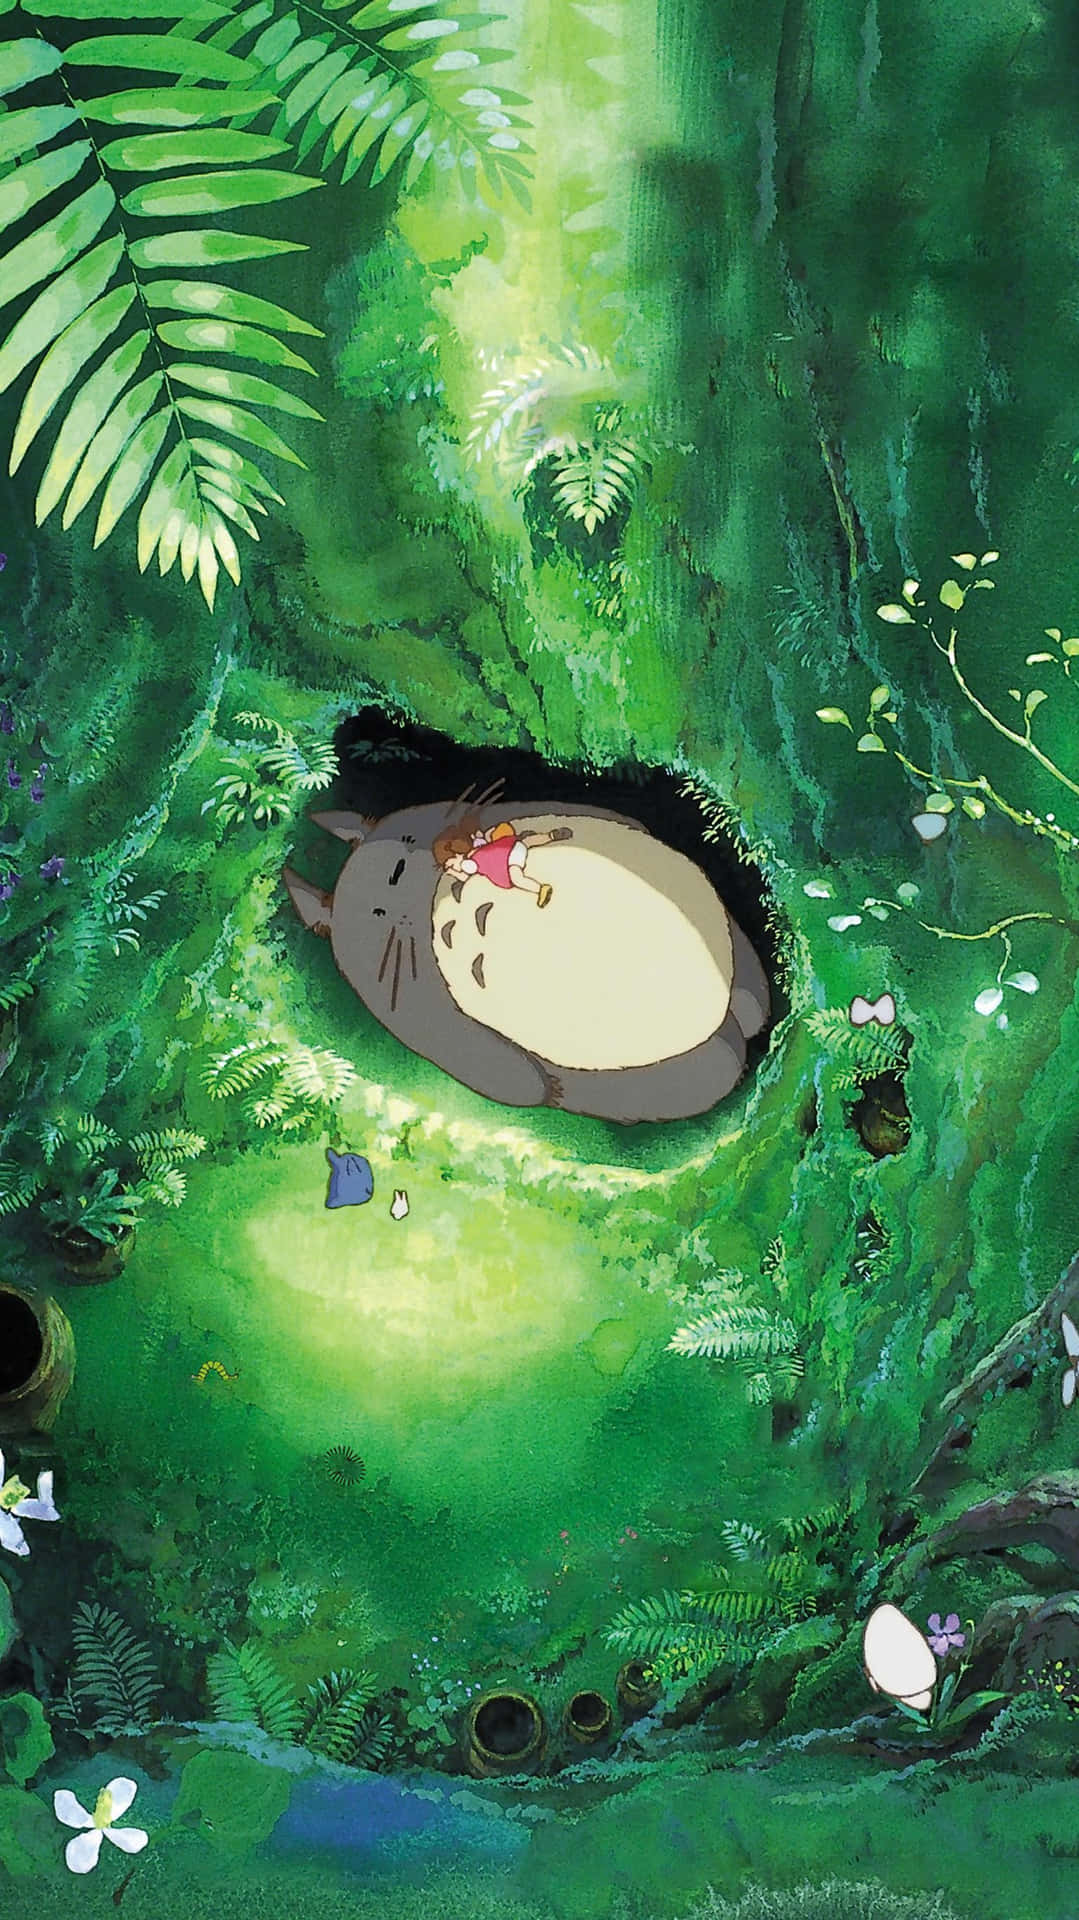 Studio Ghibli Phone Wallpaper